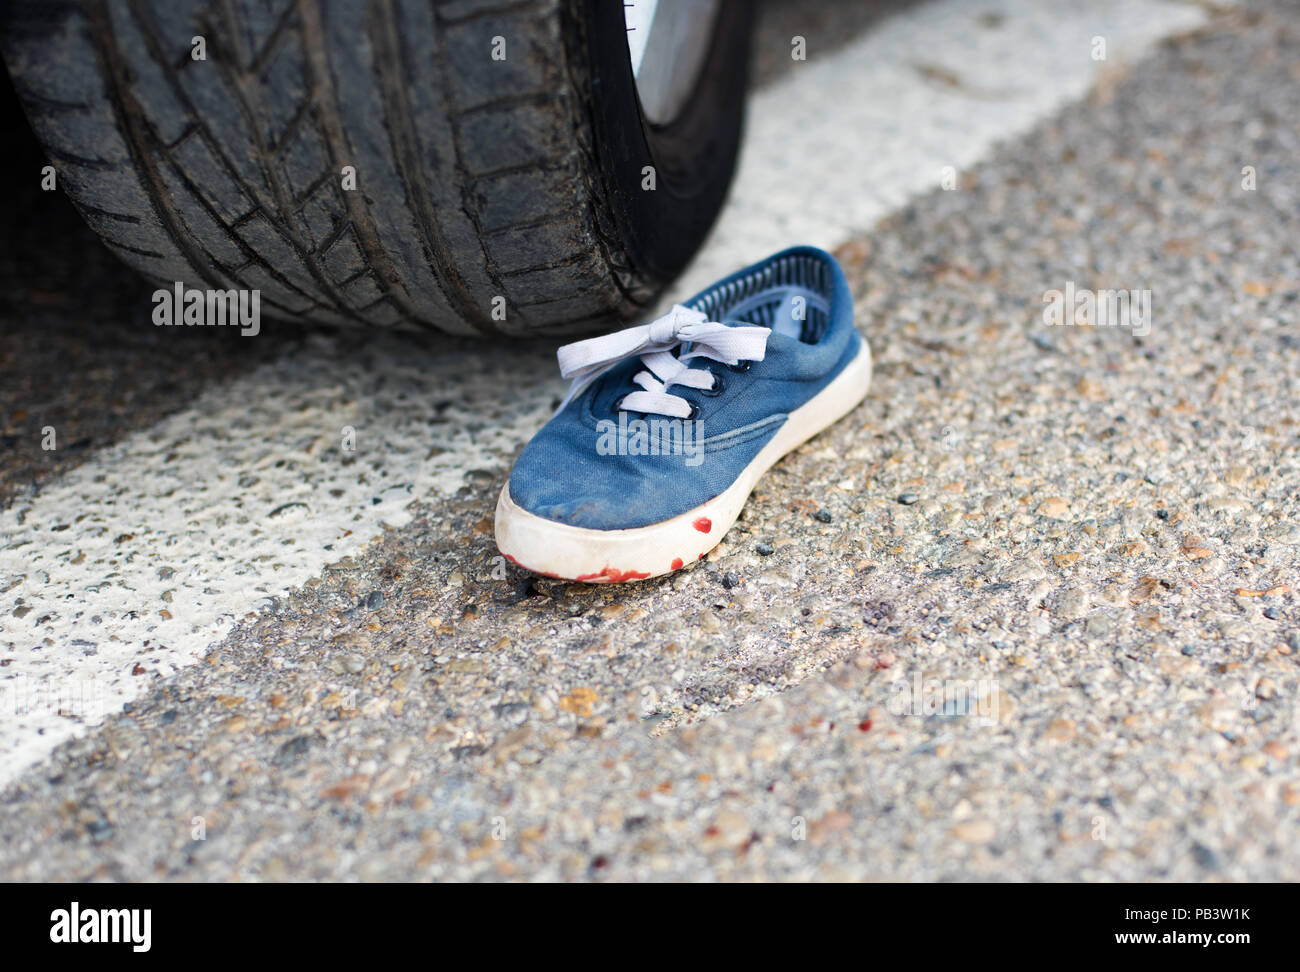 Schuhe im Blut unter dem Auto Räder Stockfotografie - Alamy